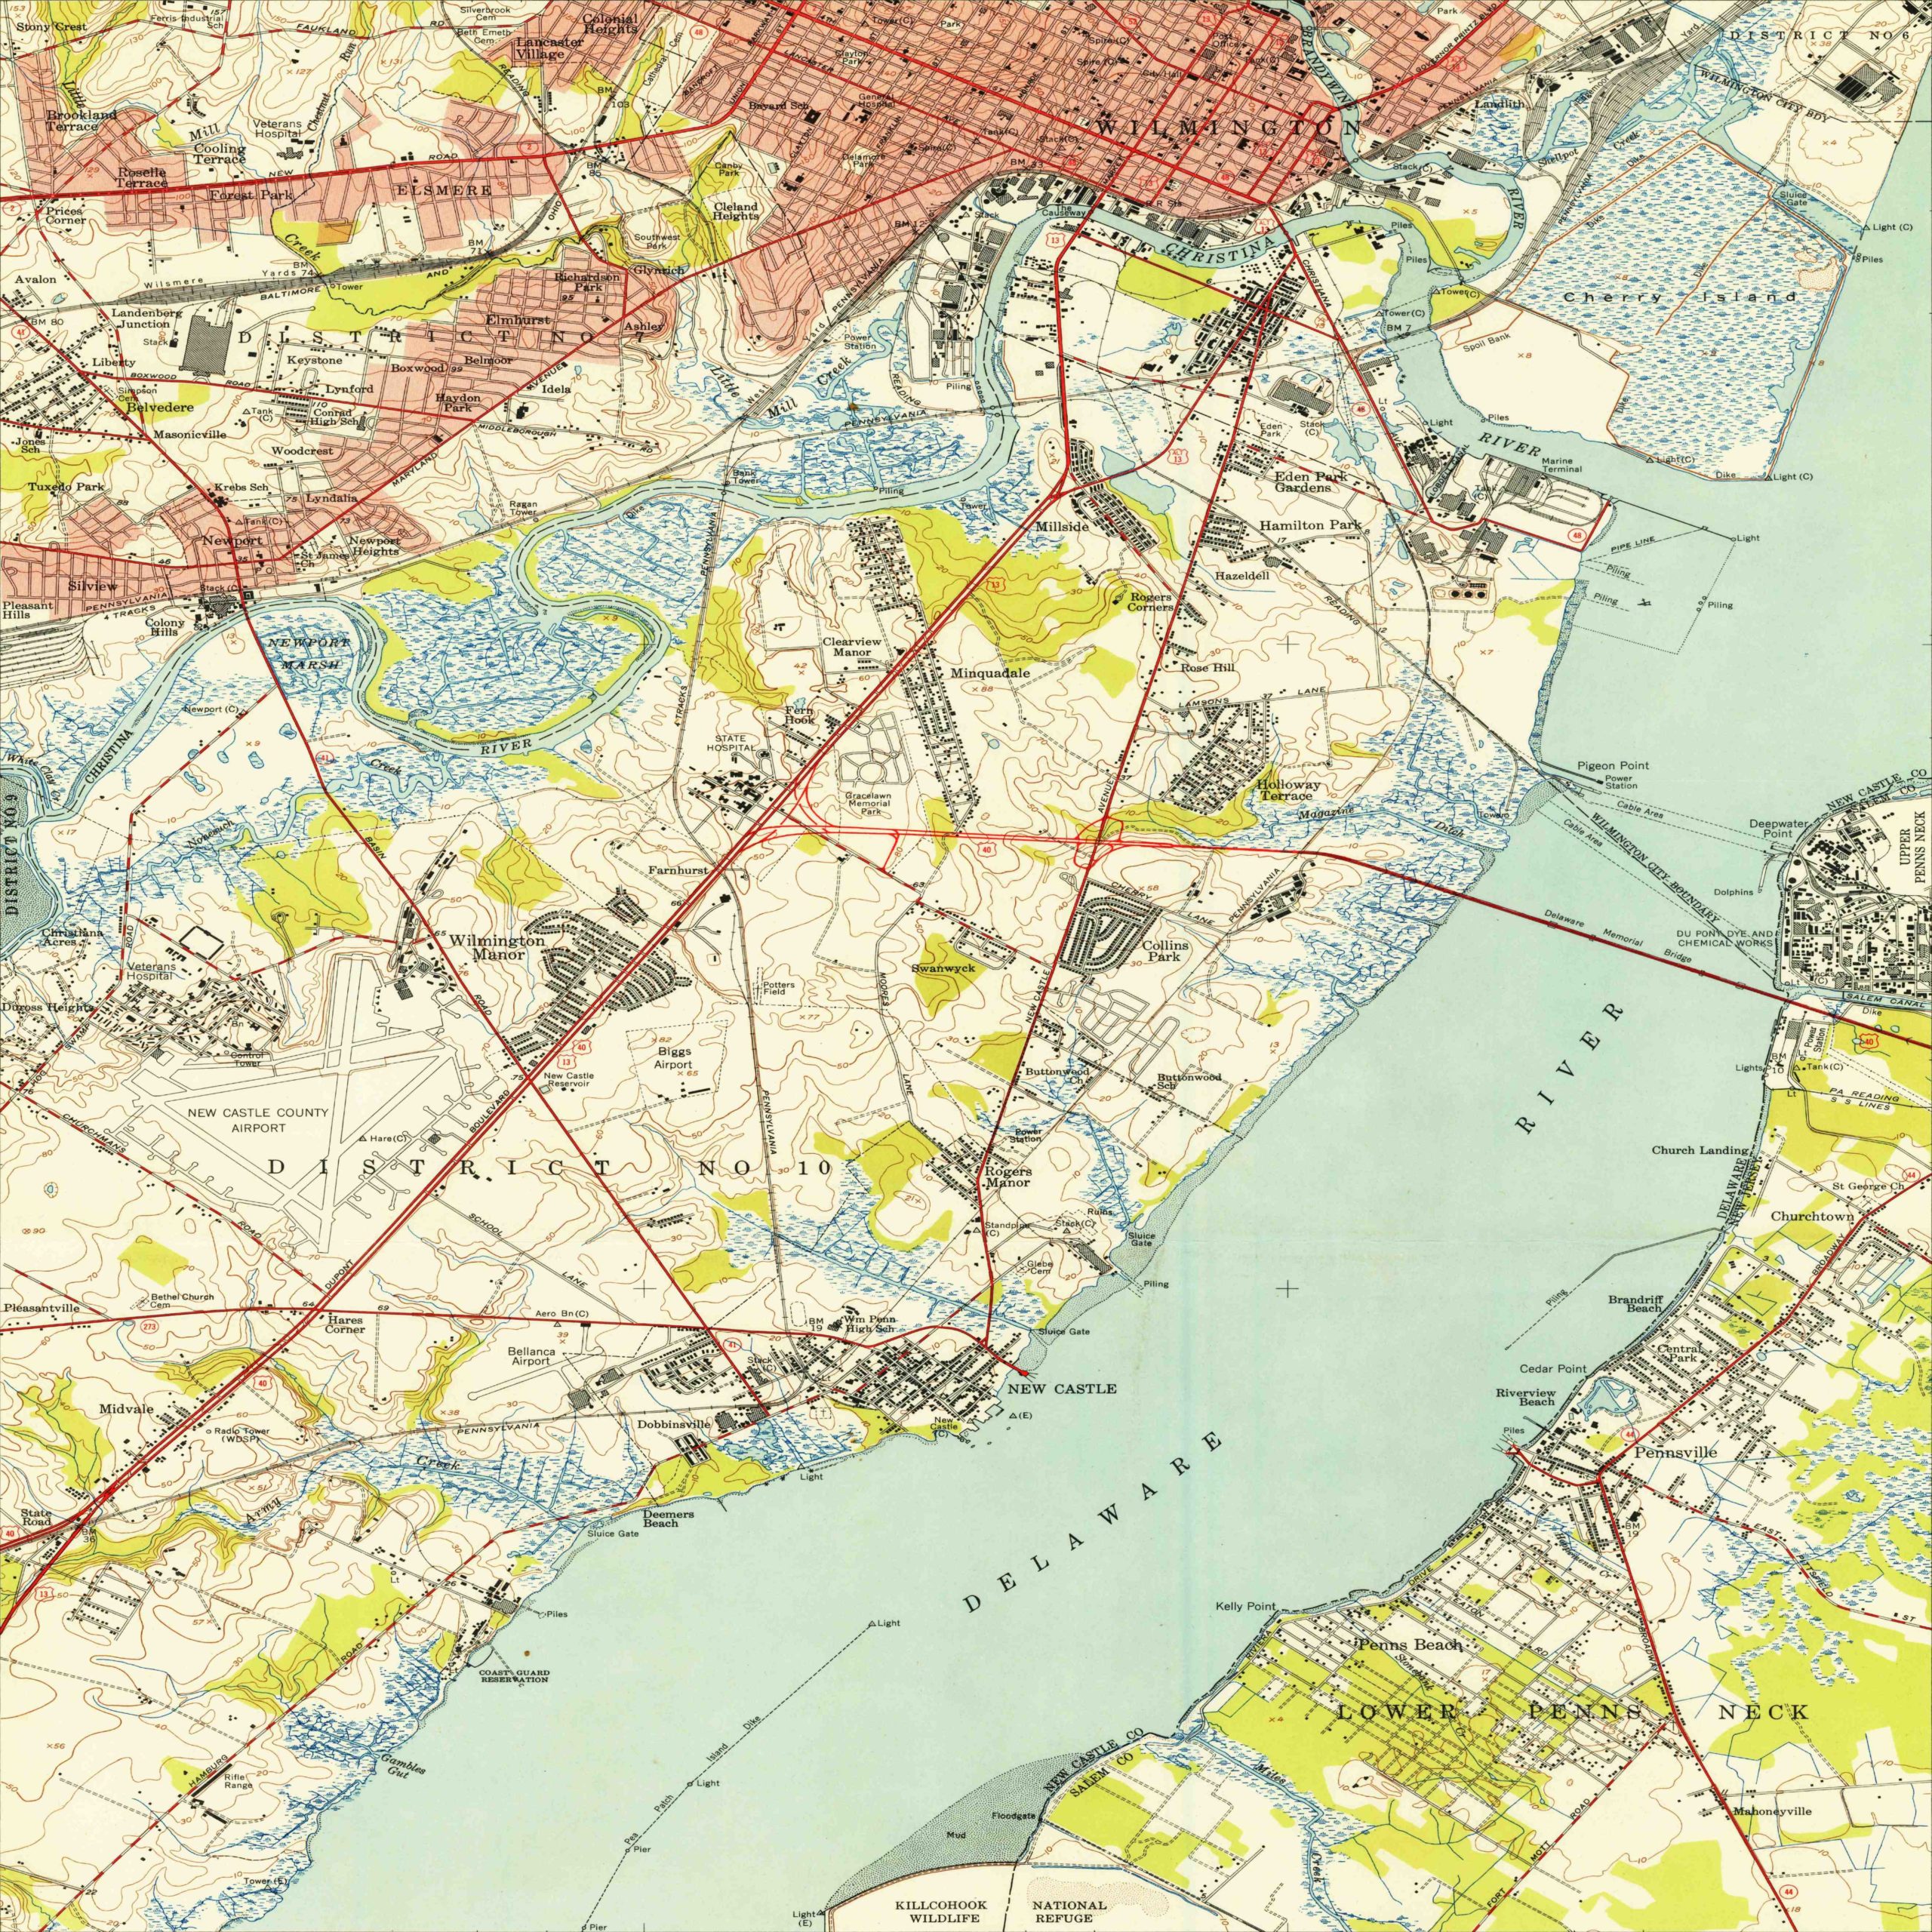 1948 Wilmington, DE and surroundings